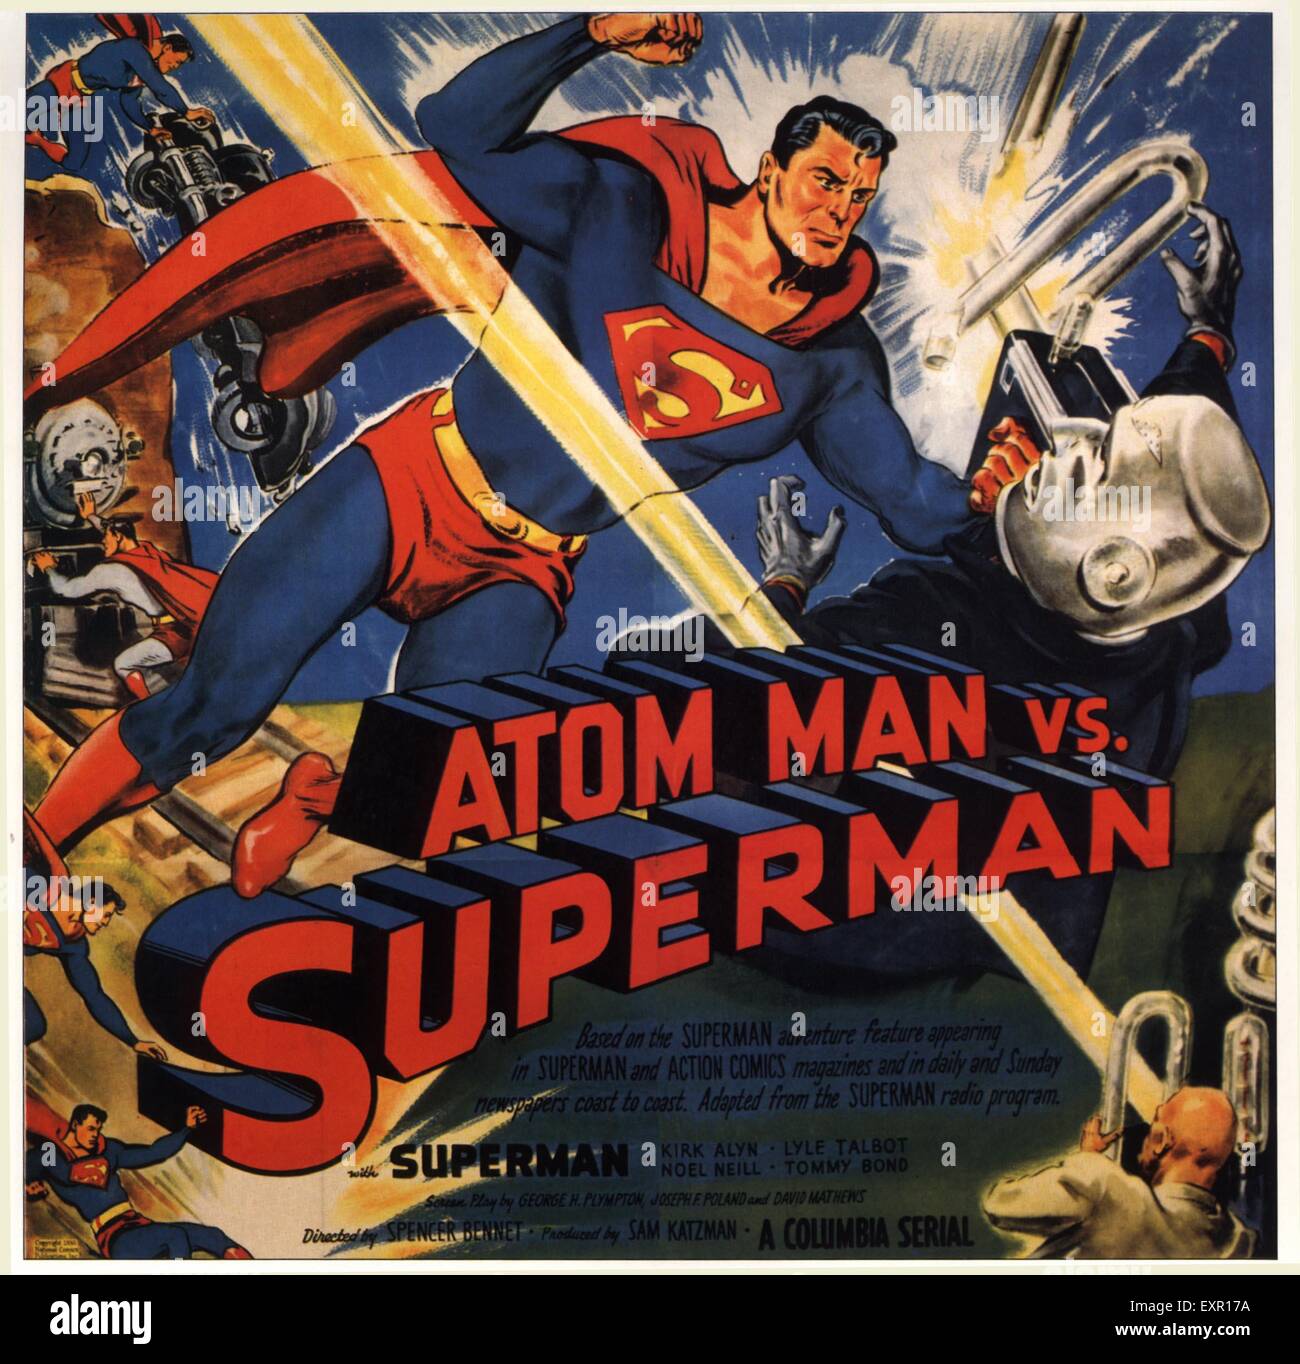 1950 USA Atom Man Vs. Affiche de film Spiderman Banque D'Images